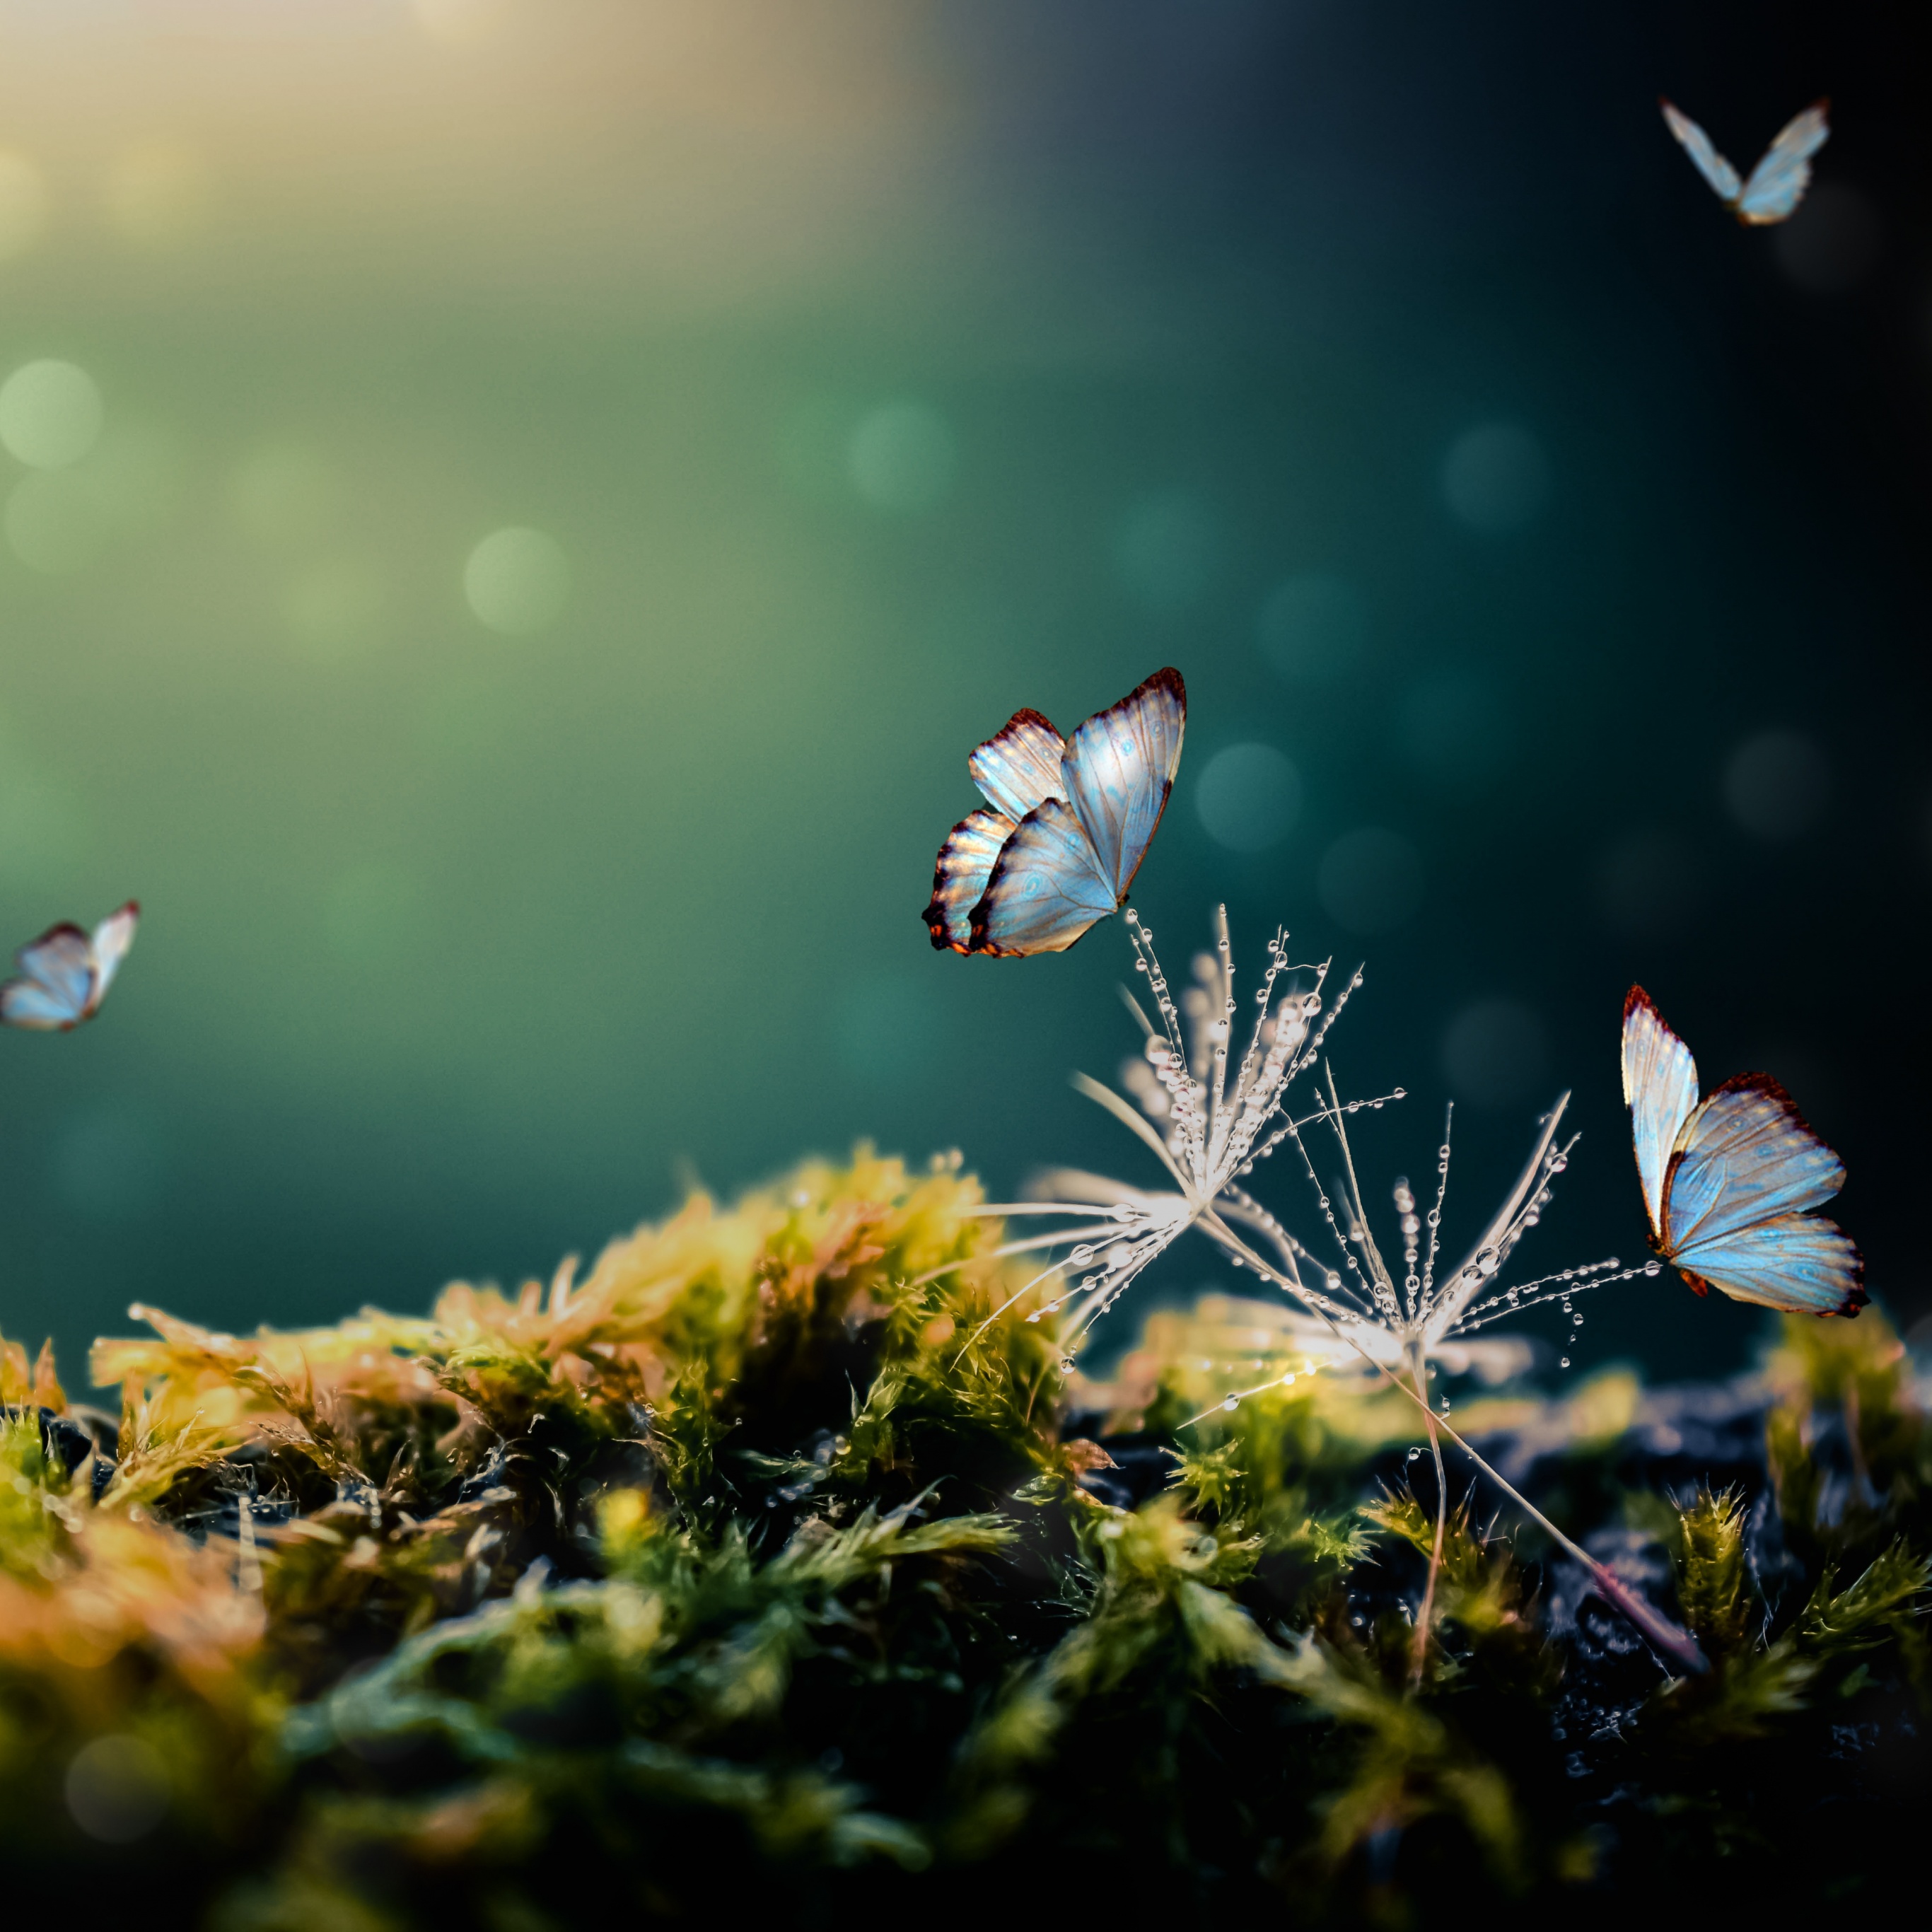 Bướm trắng: Hình ảnh một chú bướm trắng được thu lại với độ nét cao sẽ khiến bạn có cảm giác như mình đang theo chân nó đến những vườn hoa rực rỡ. Làm đầy giấc mơ của bạn với âm hưởng hữu tình của bướm trắng.